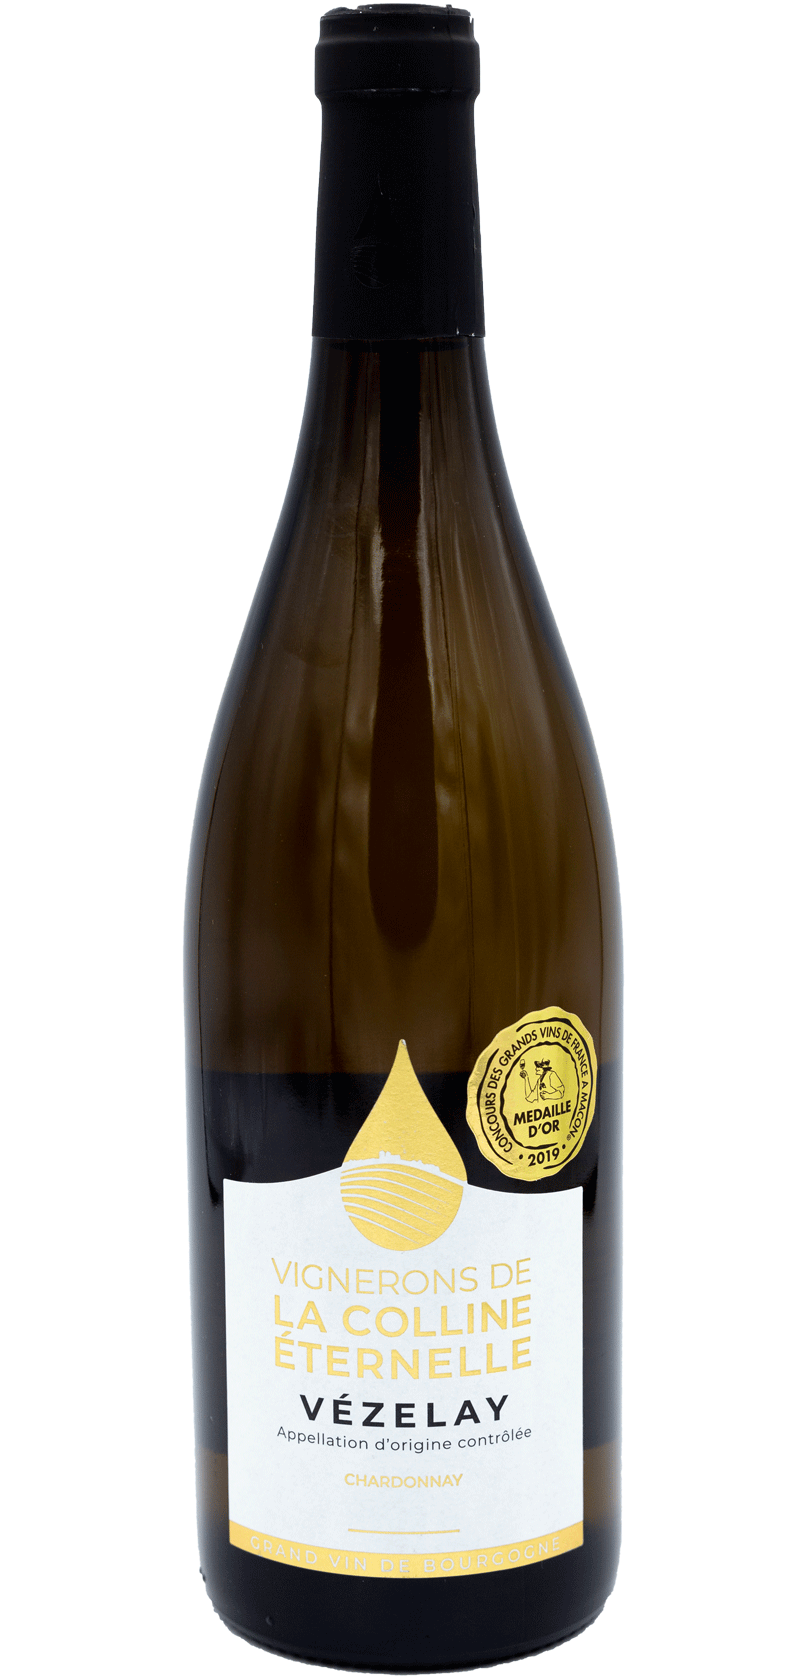 Vignerons de la Colline Eternelle - Chardonnay - 2017 - White wine